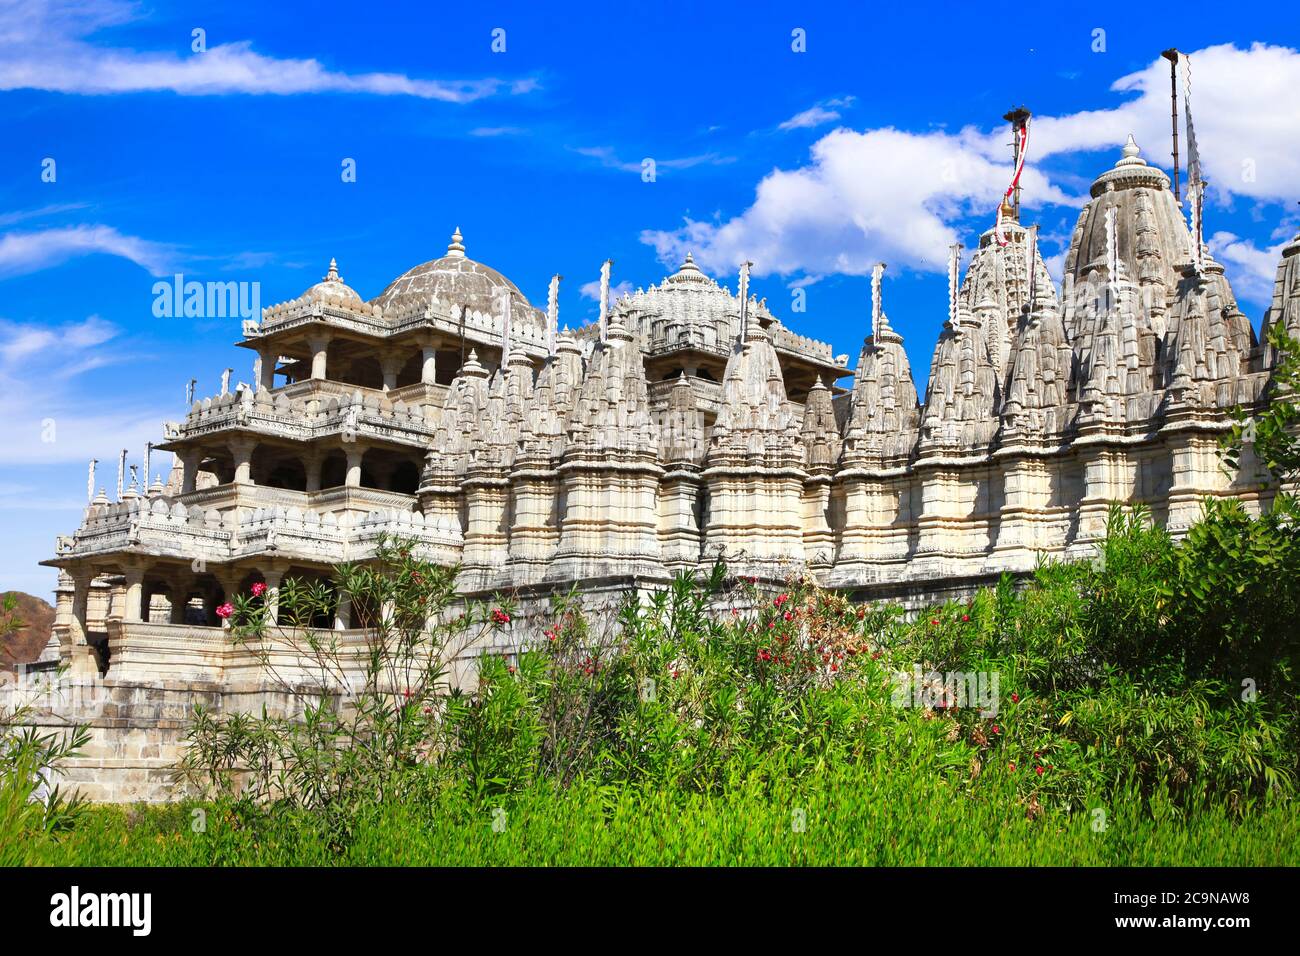 El Templo de Ranakpur es uno de los templos más grandes e importantes de la cultura Jain. Rajasthan, India Foto de stock